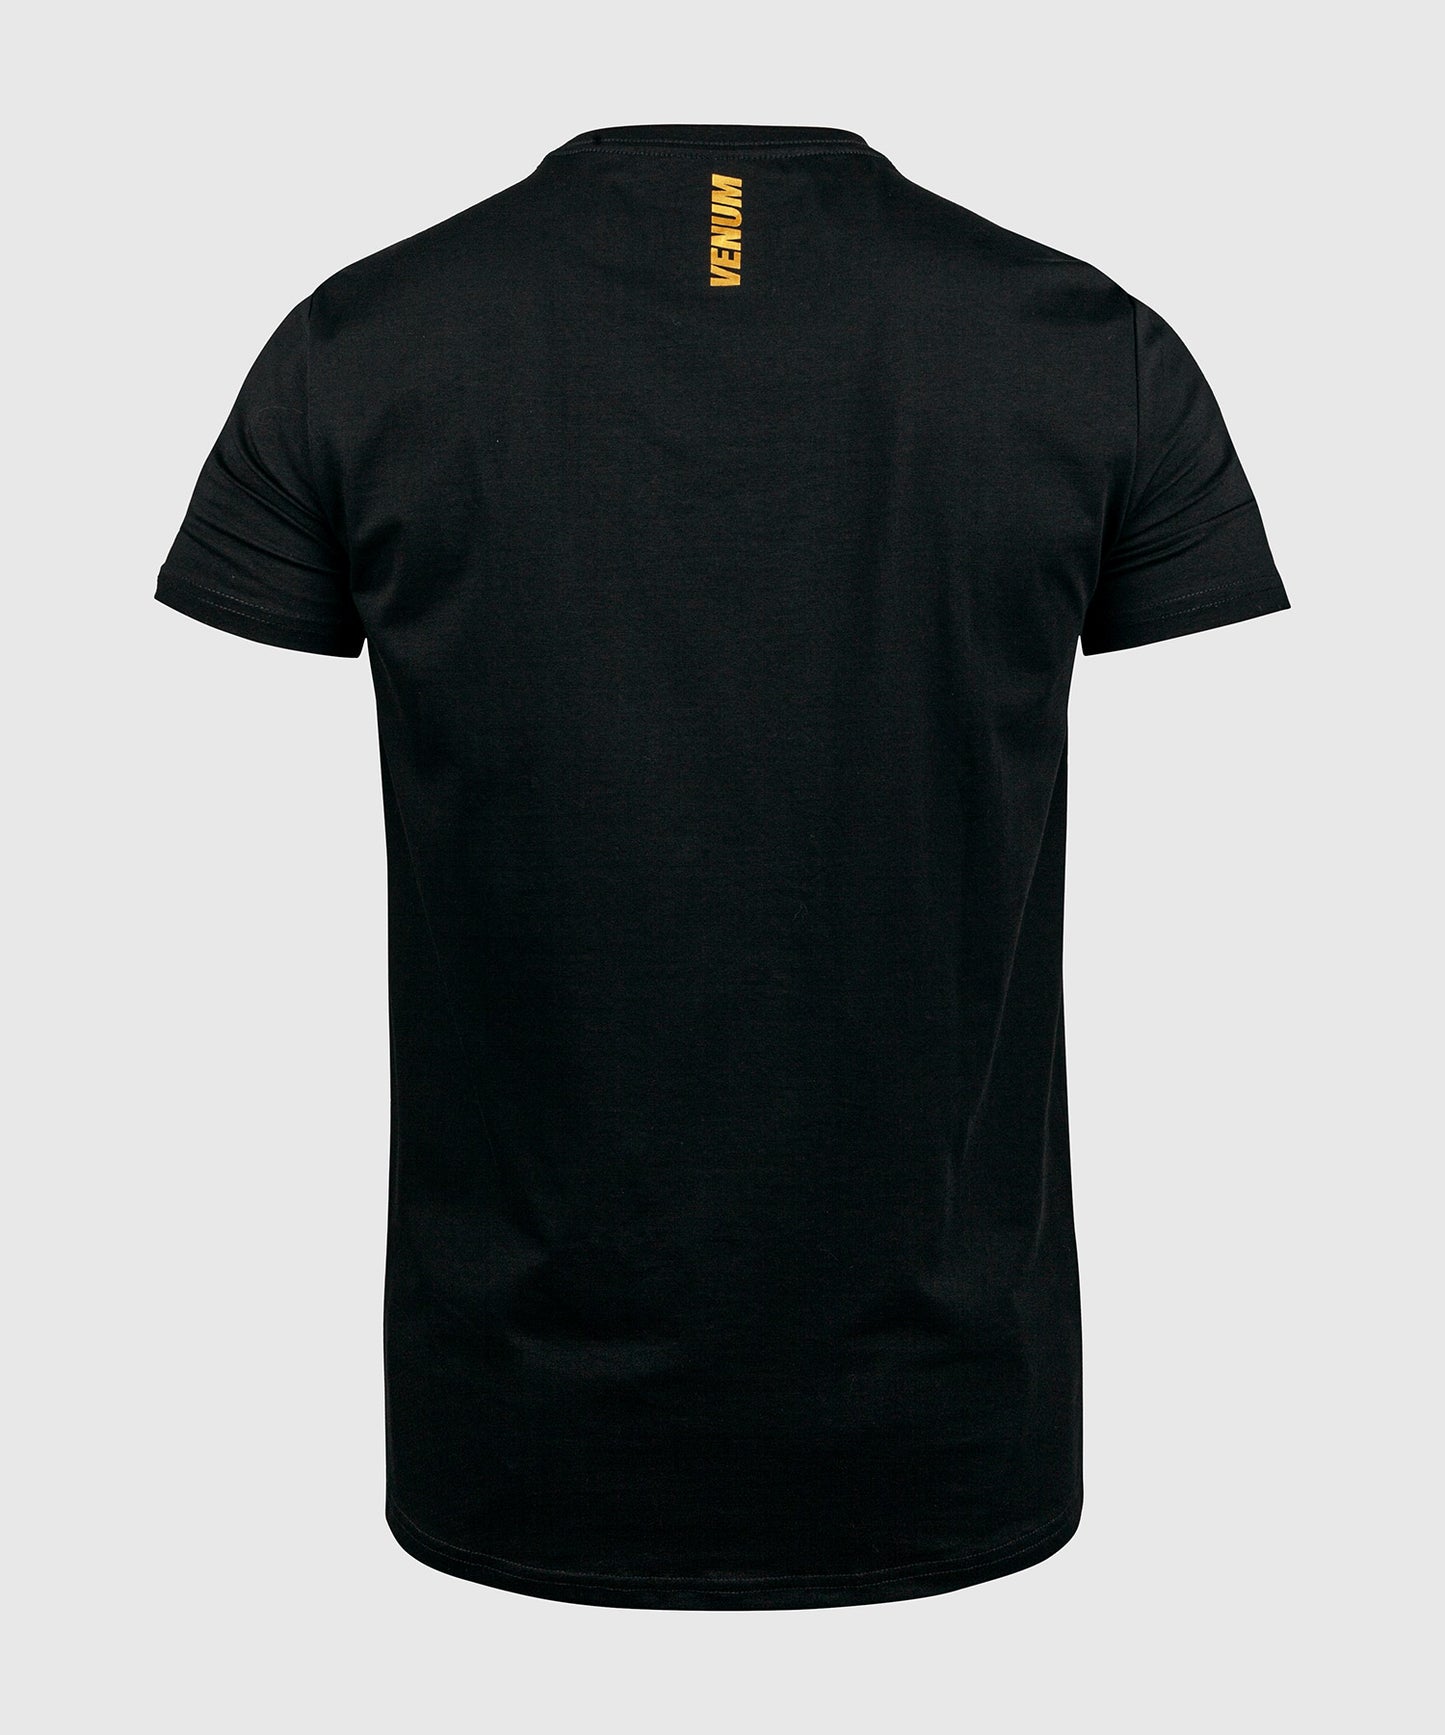 Camiseta Boxing VT de Venum - Negro/Oro